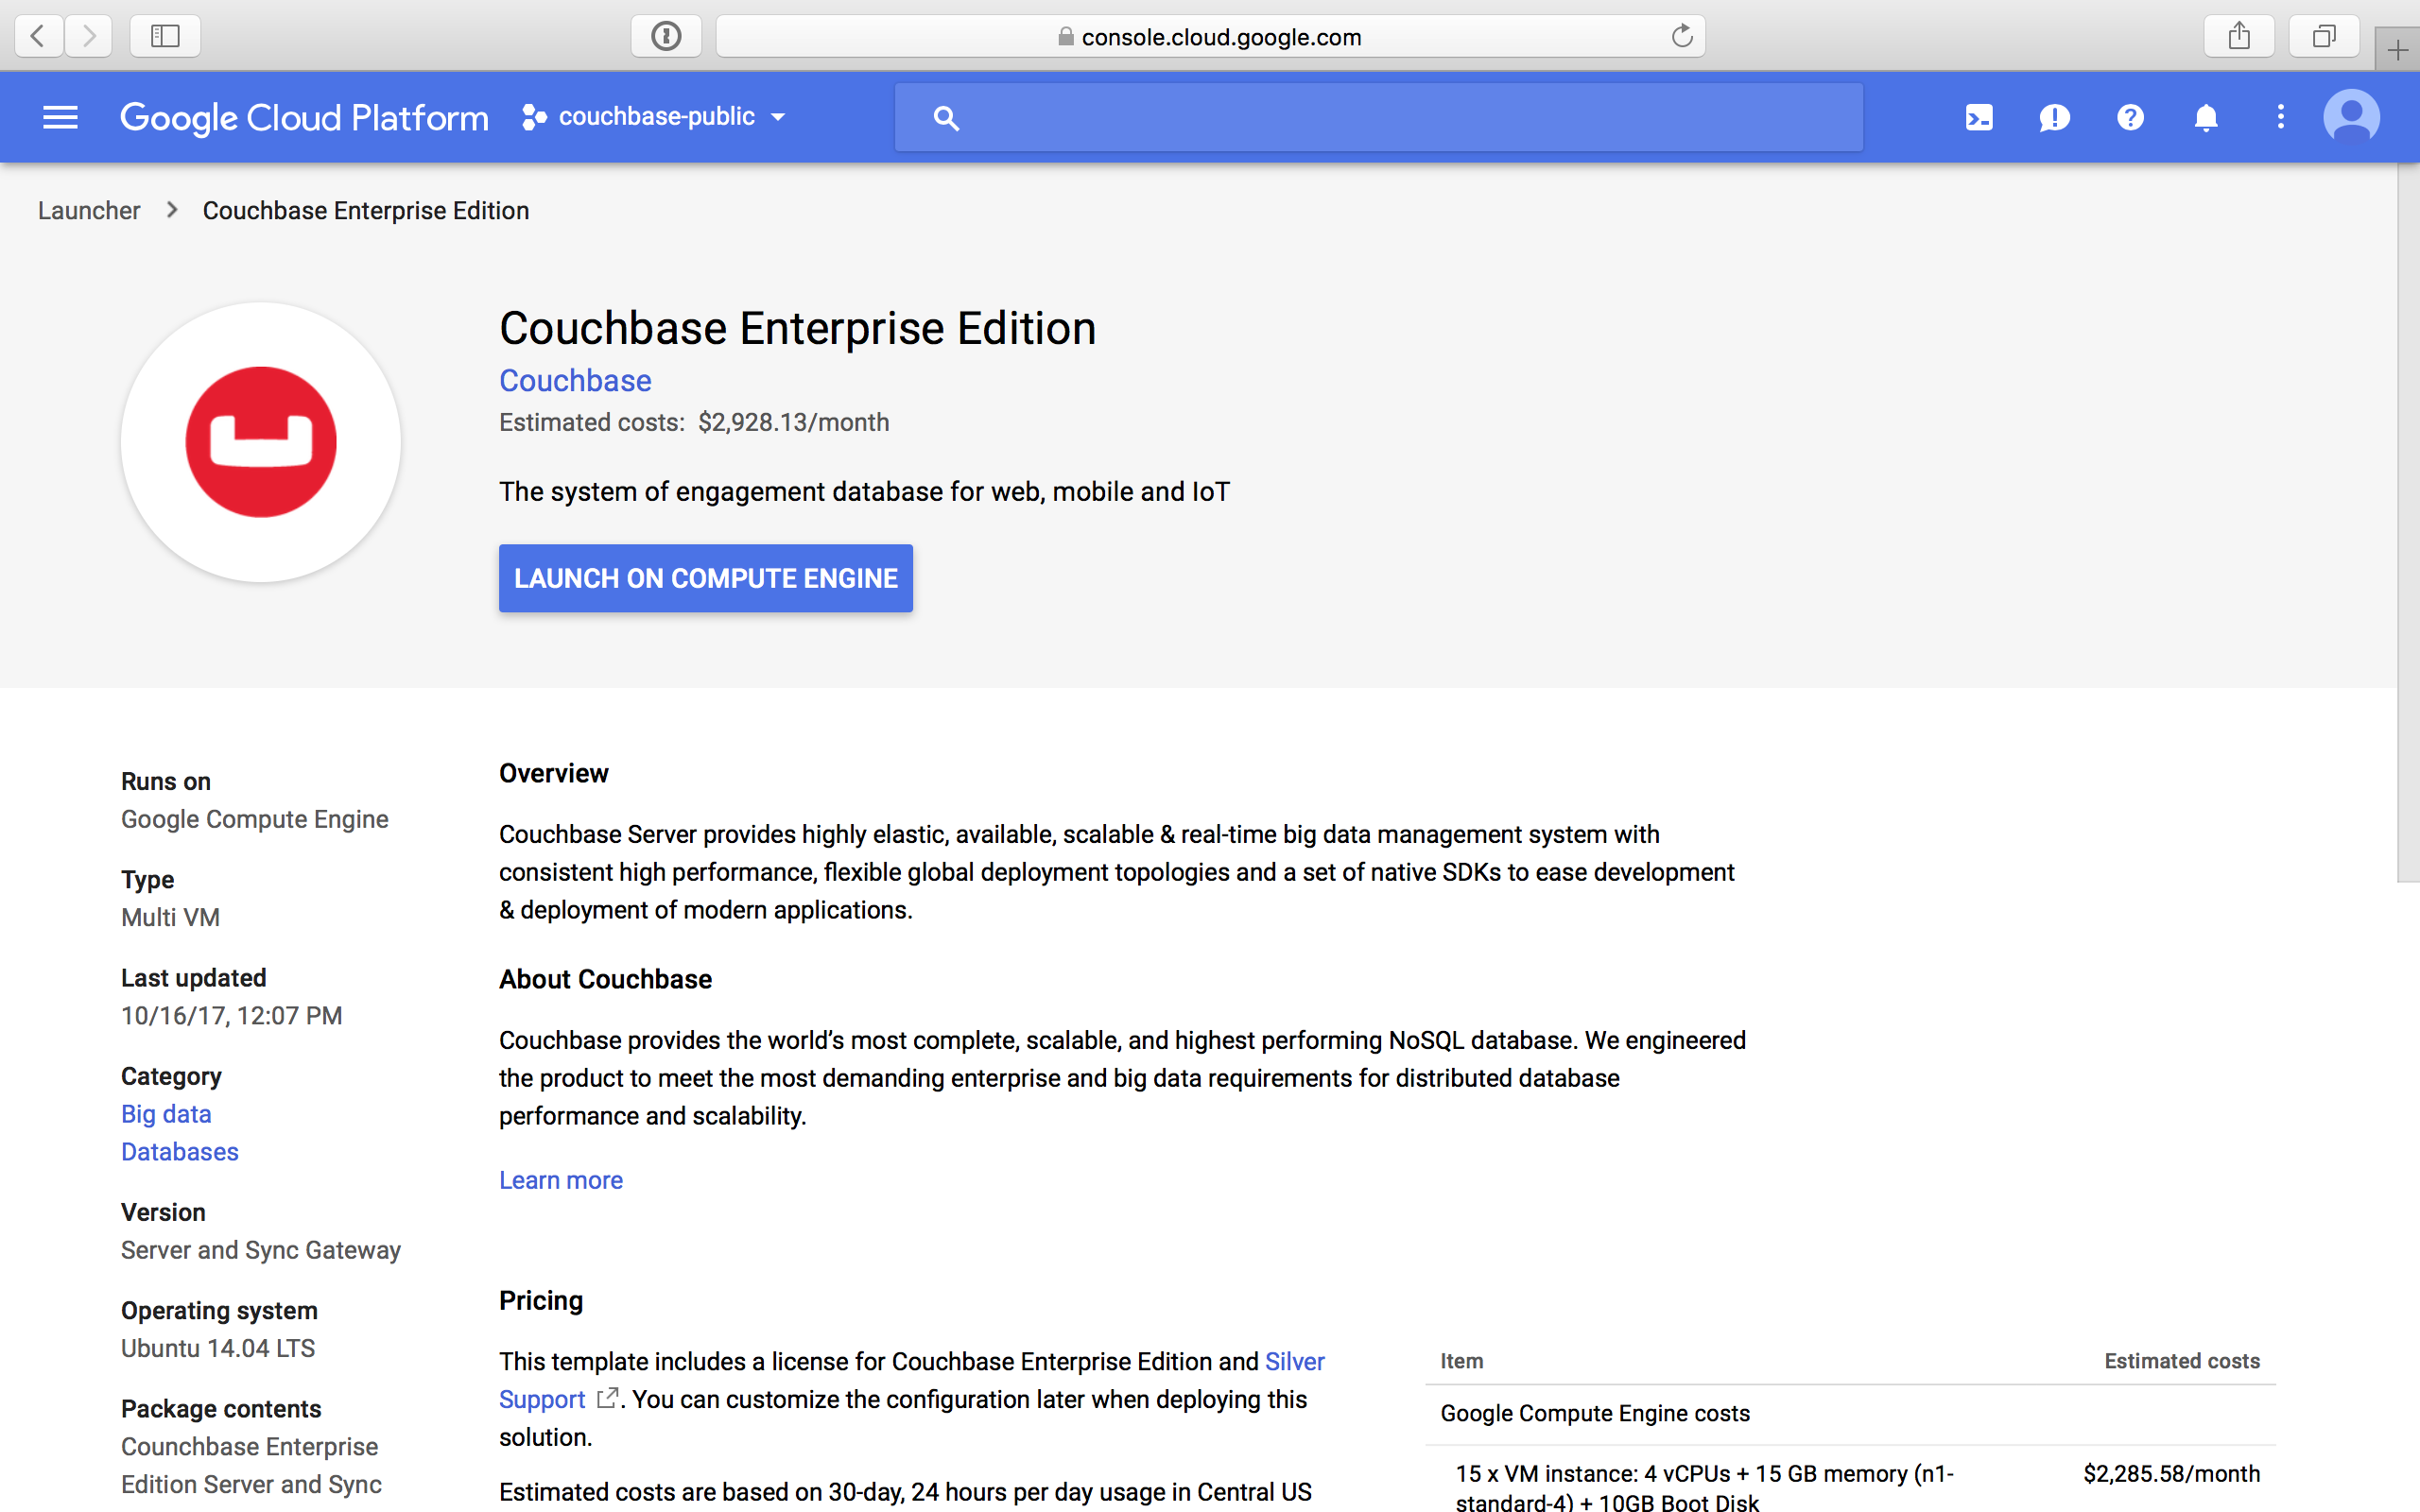 gcp cloud launcher couchbase enterprise